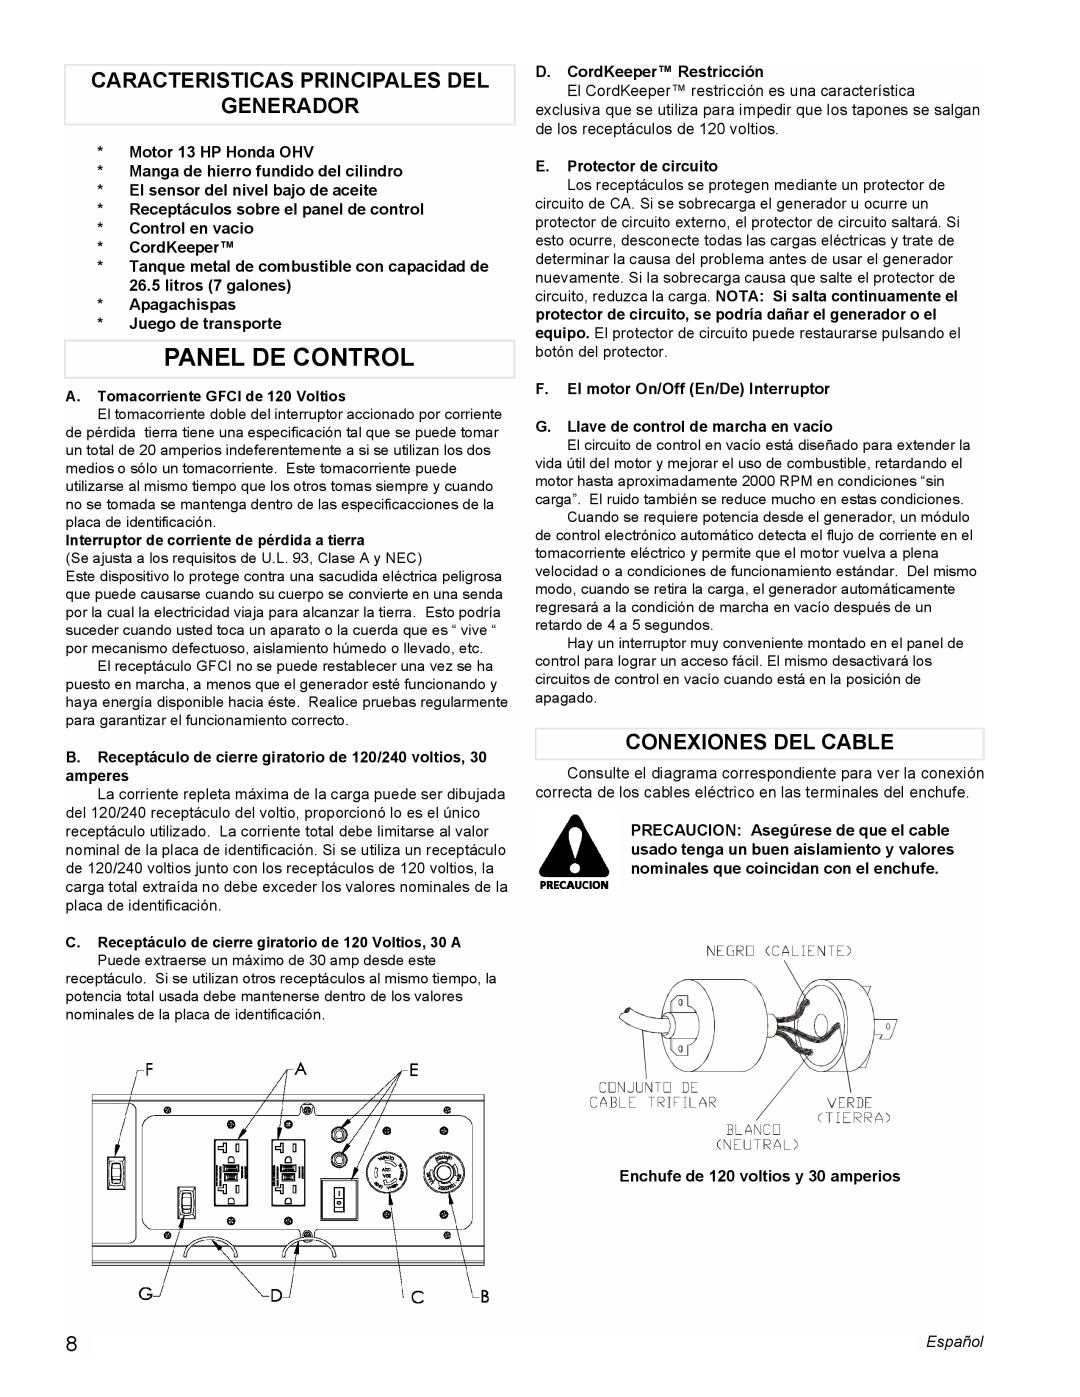 Powermate PMC605000 manual Panel De Control, Caracteristicas Principales Del Generador, Conexiones Del Cable 